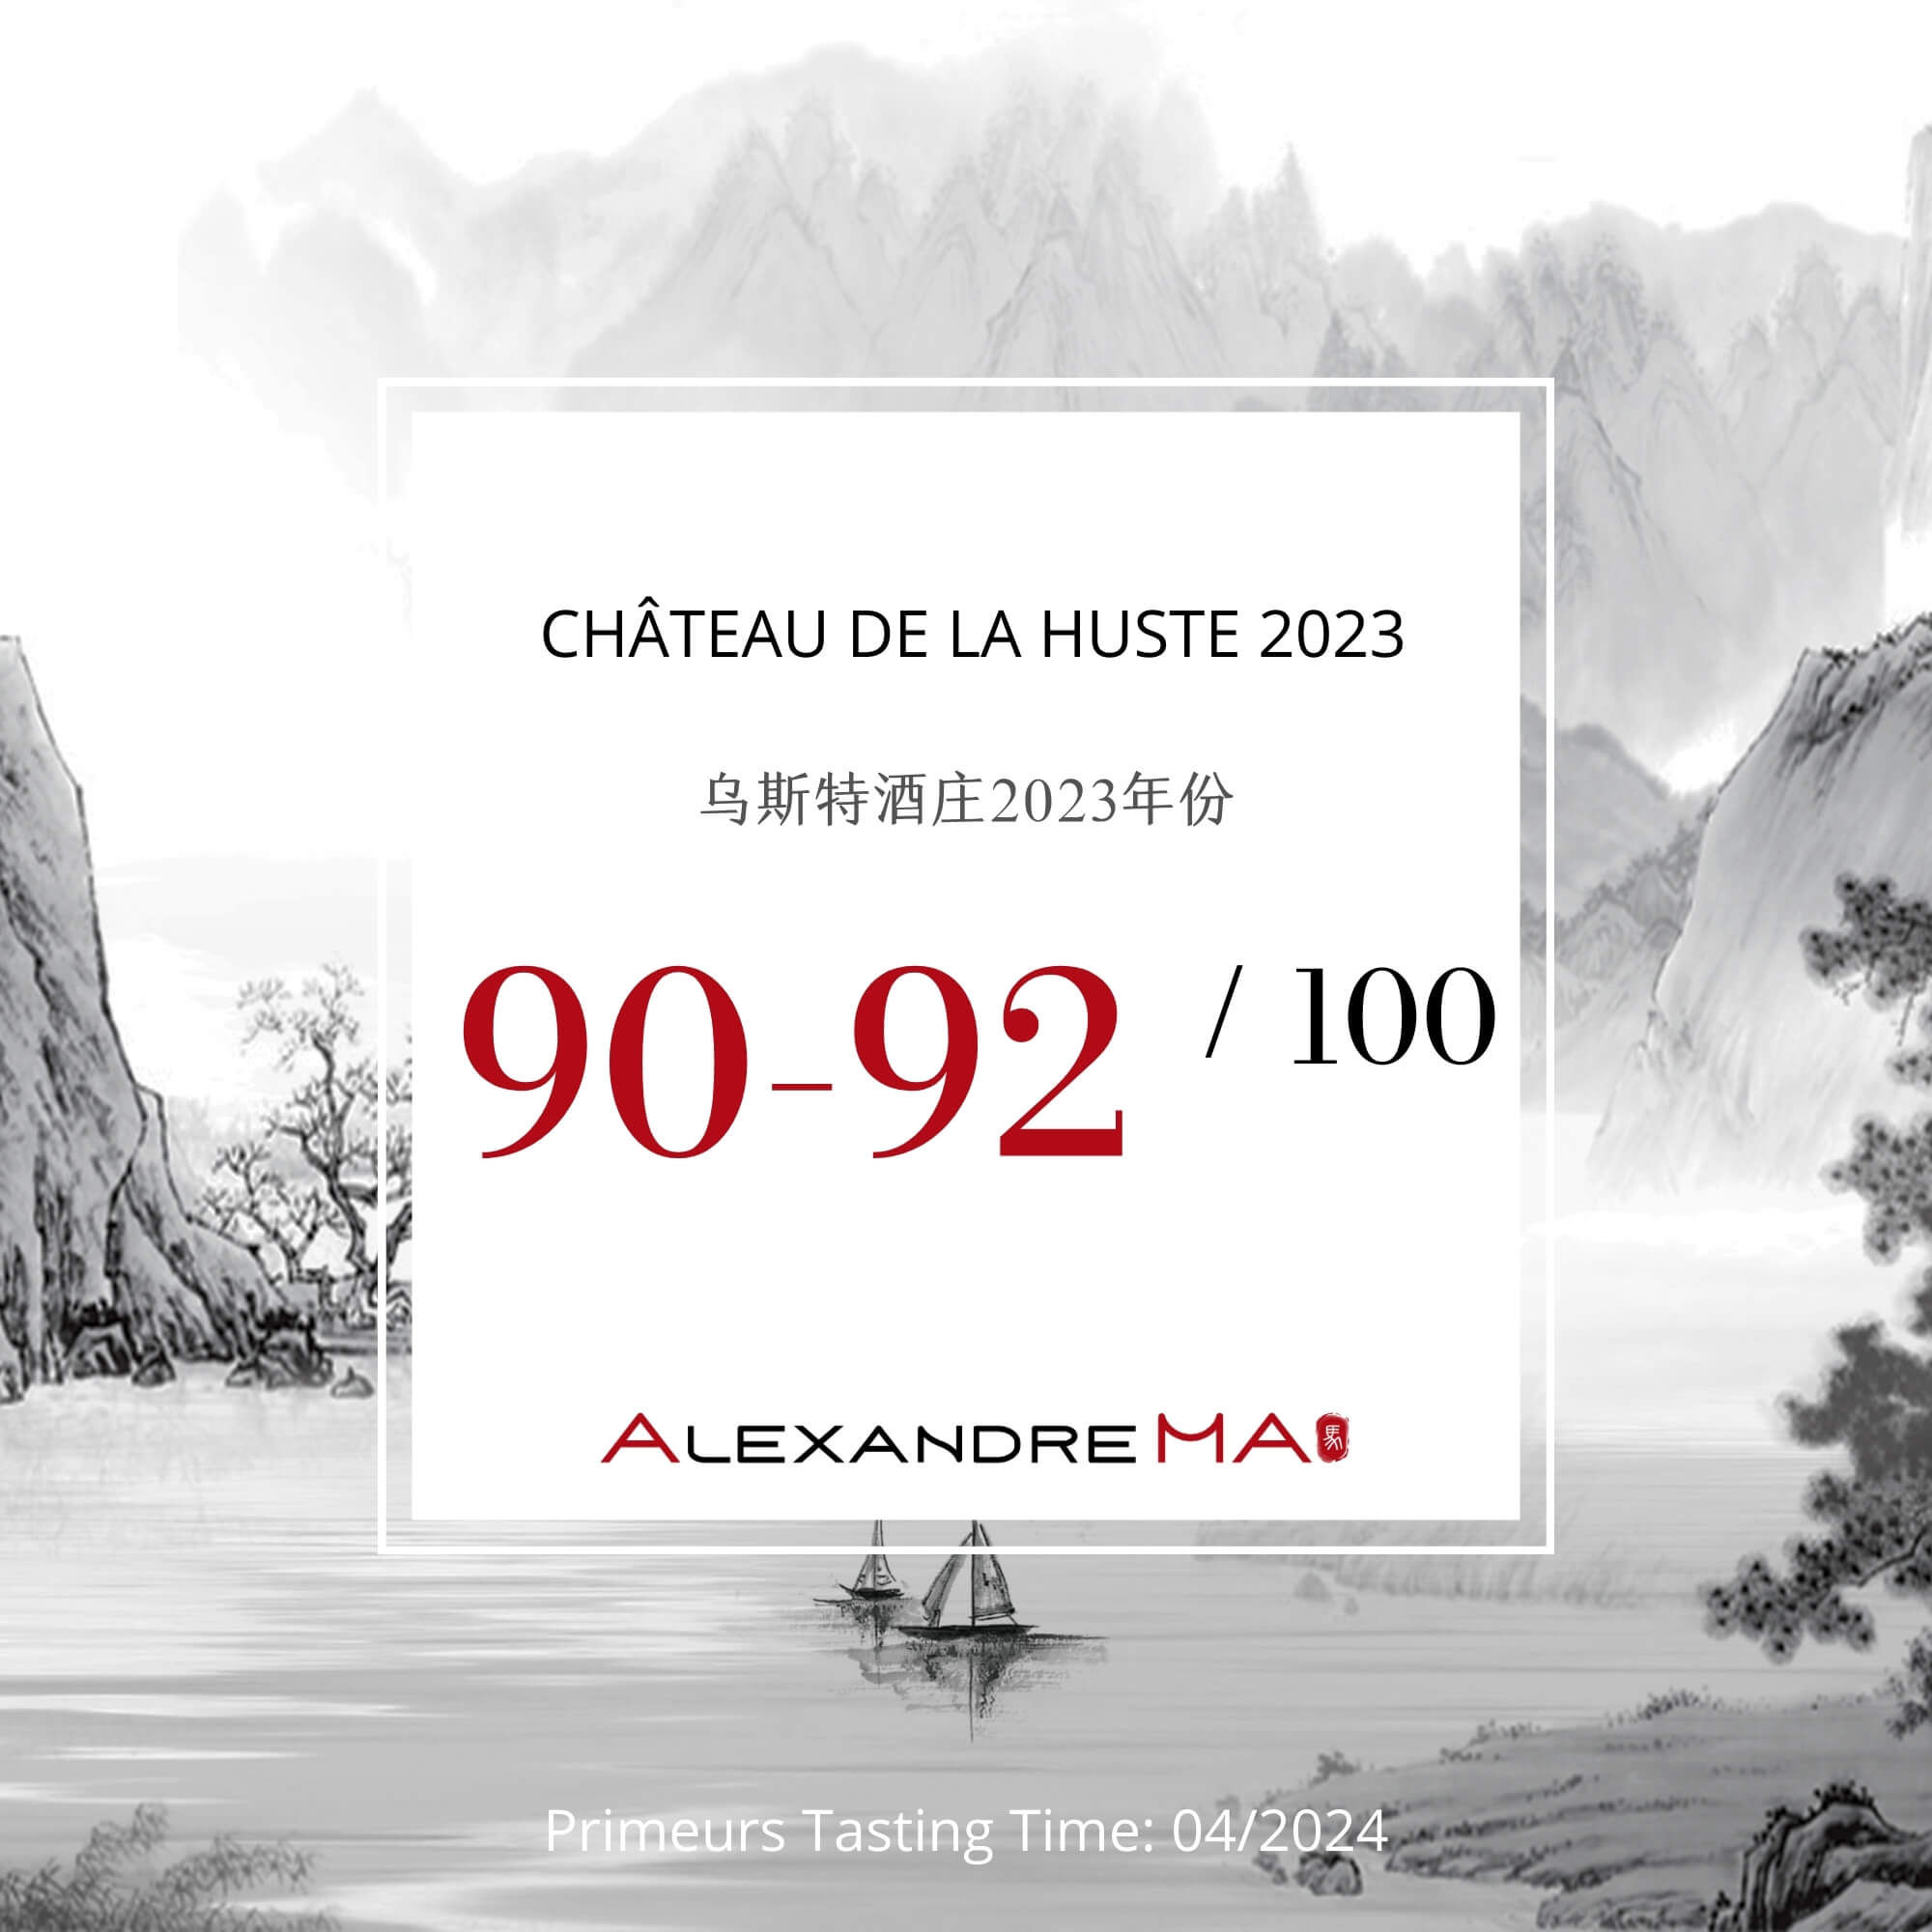 Château de La Huste 2023 Primeurs - Alexandre MA